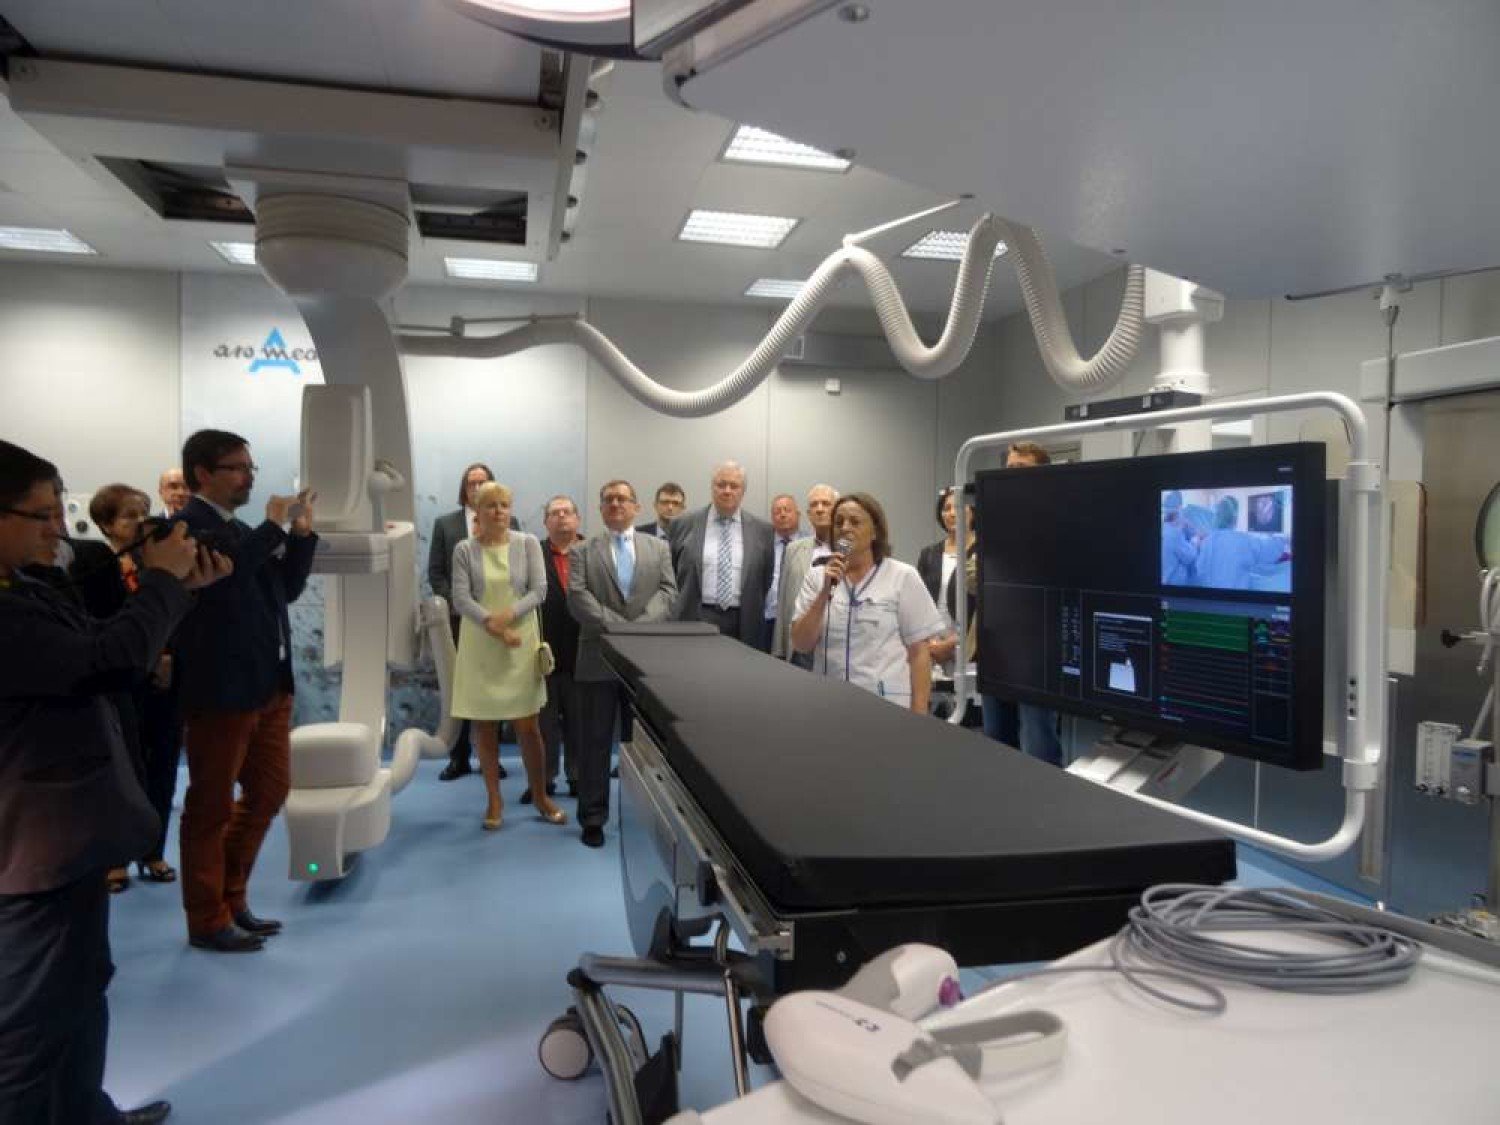 Nowy szpital Ars Medical w Pile już otwarty | Piła Nasze Miasto